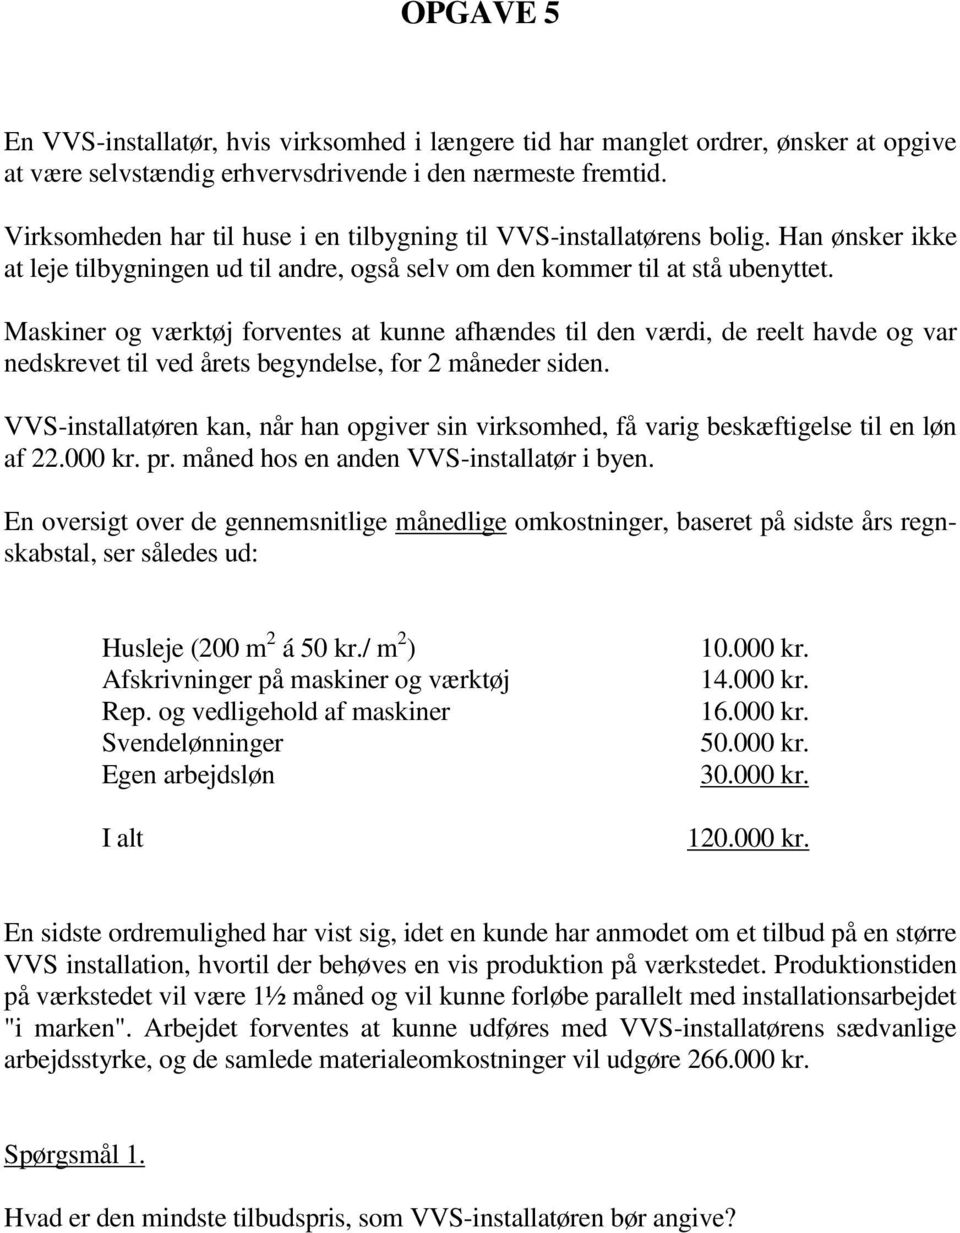 OPGAVER. VIRKSOMHEDSØKONOMI Efterår 2010 B5 - CSTBI2 - CSTBL2 - PDF Gratis  download